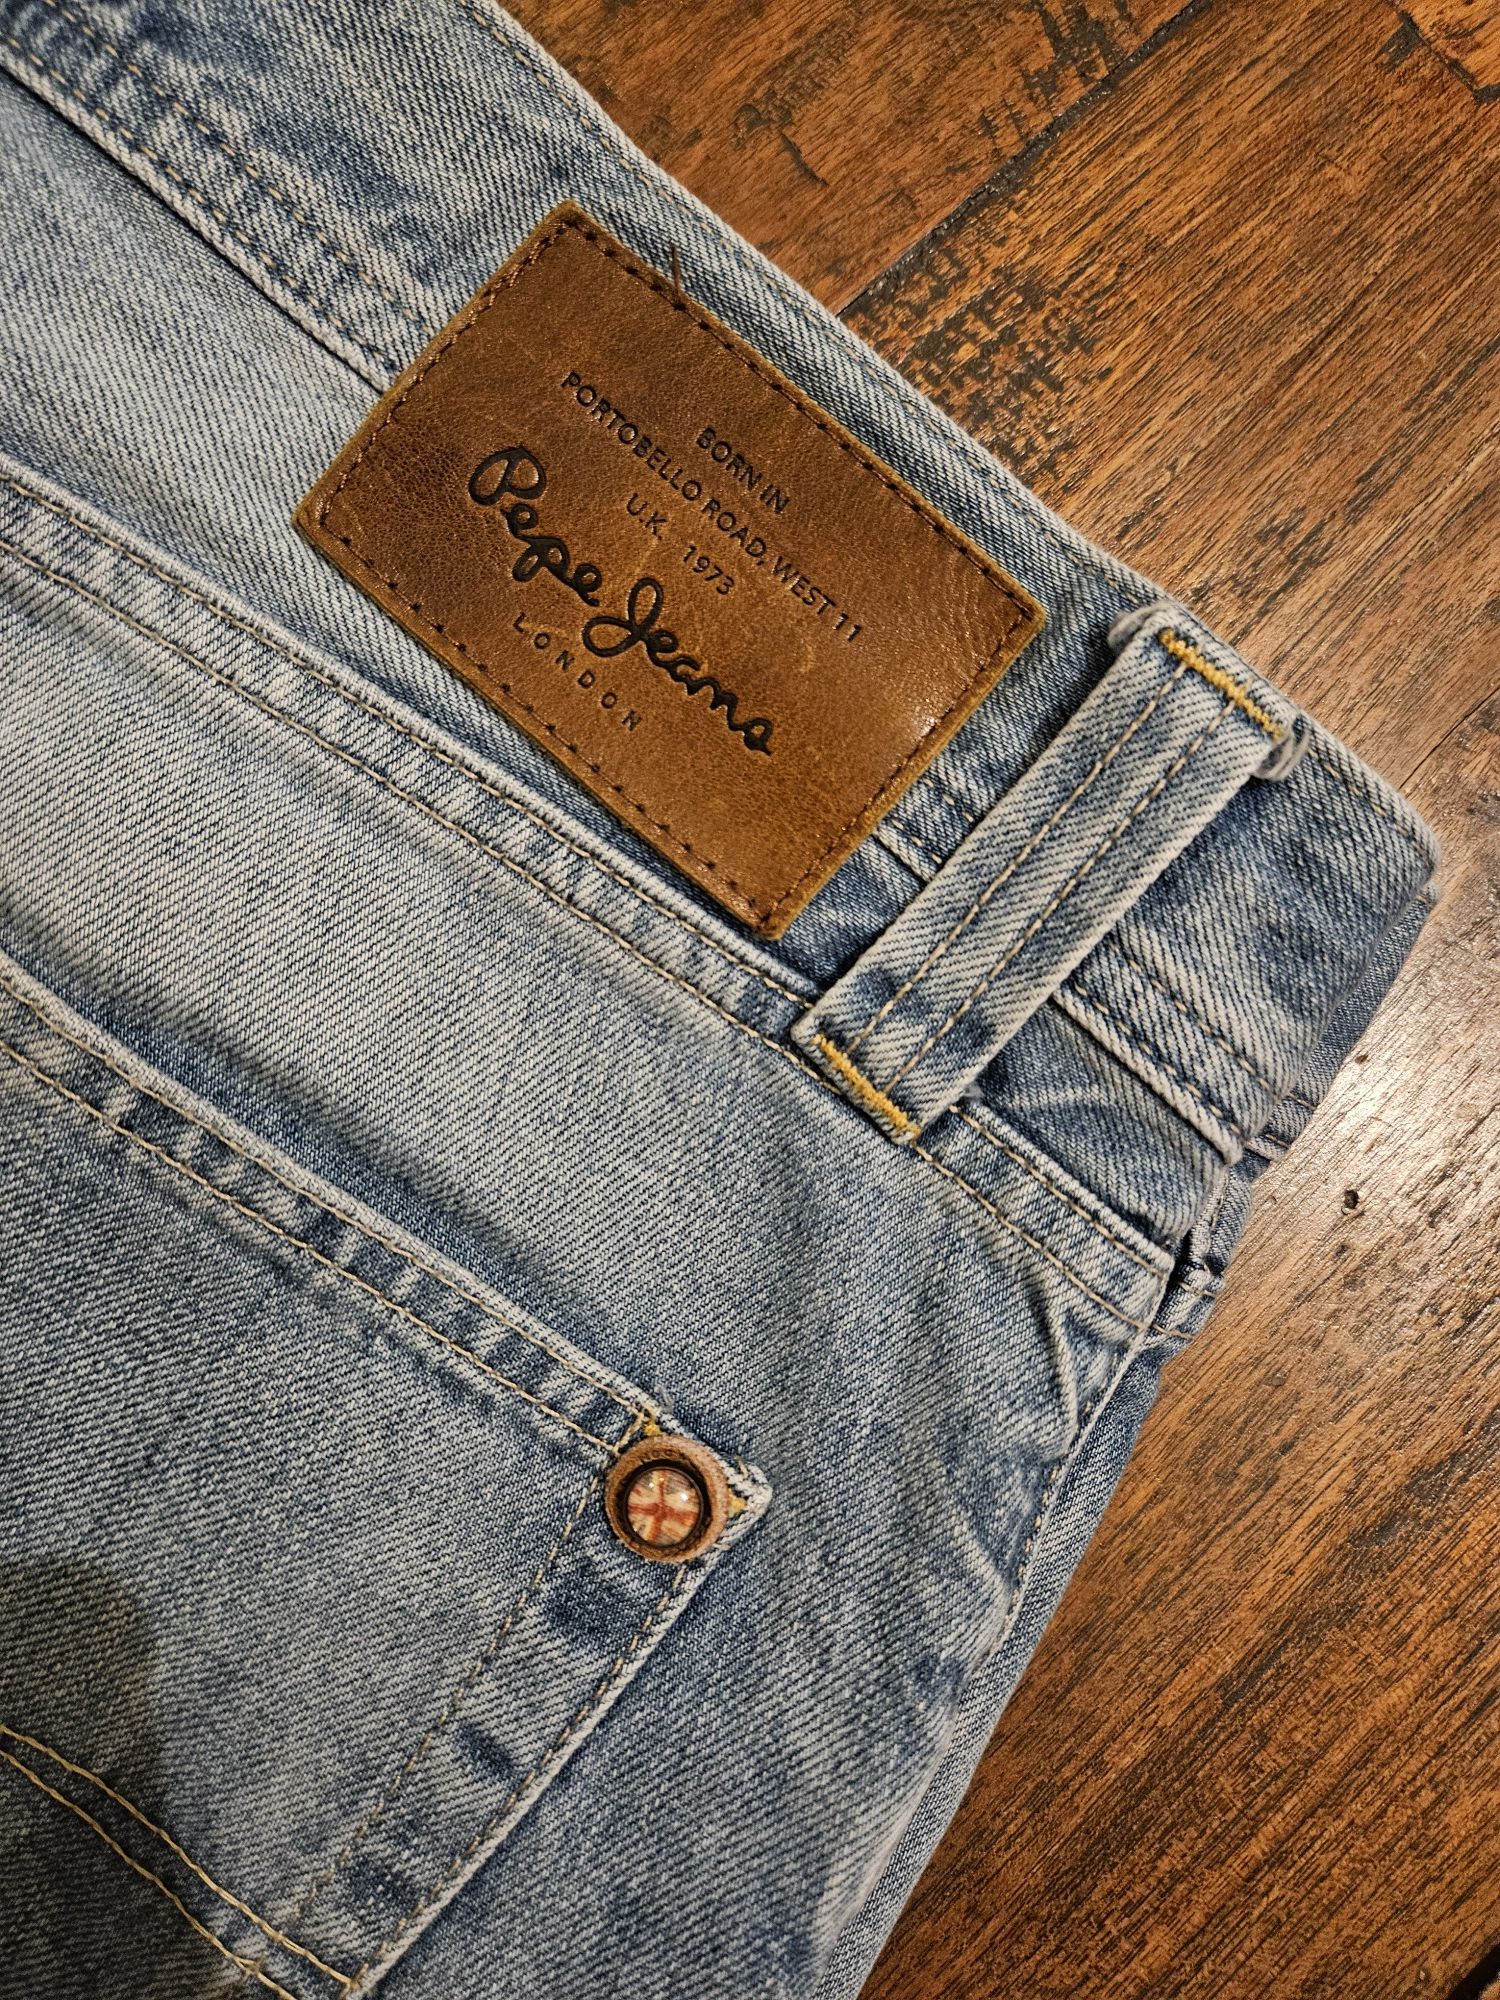 Spodnie typu  jeans Pepe Jeans 32/32. Rezerwacja